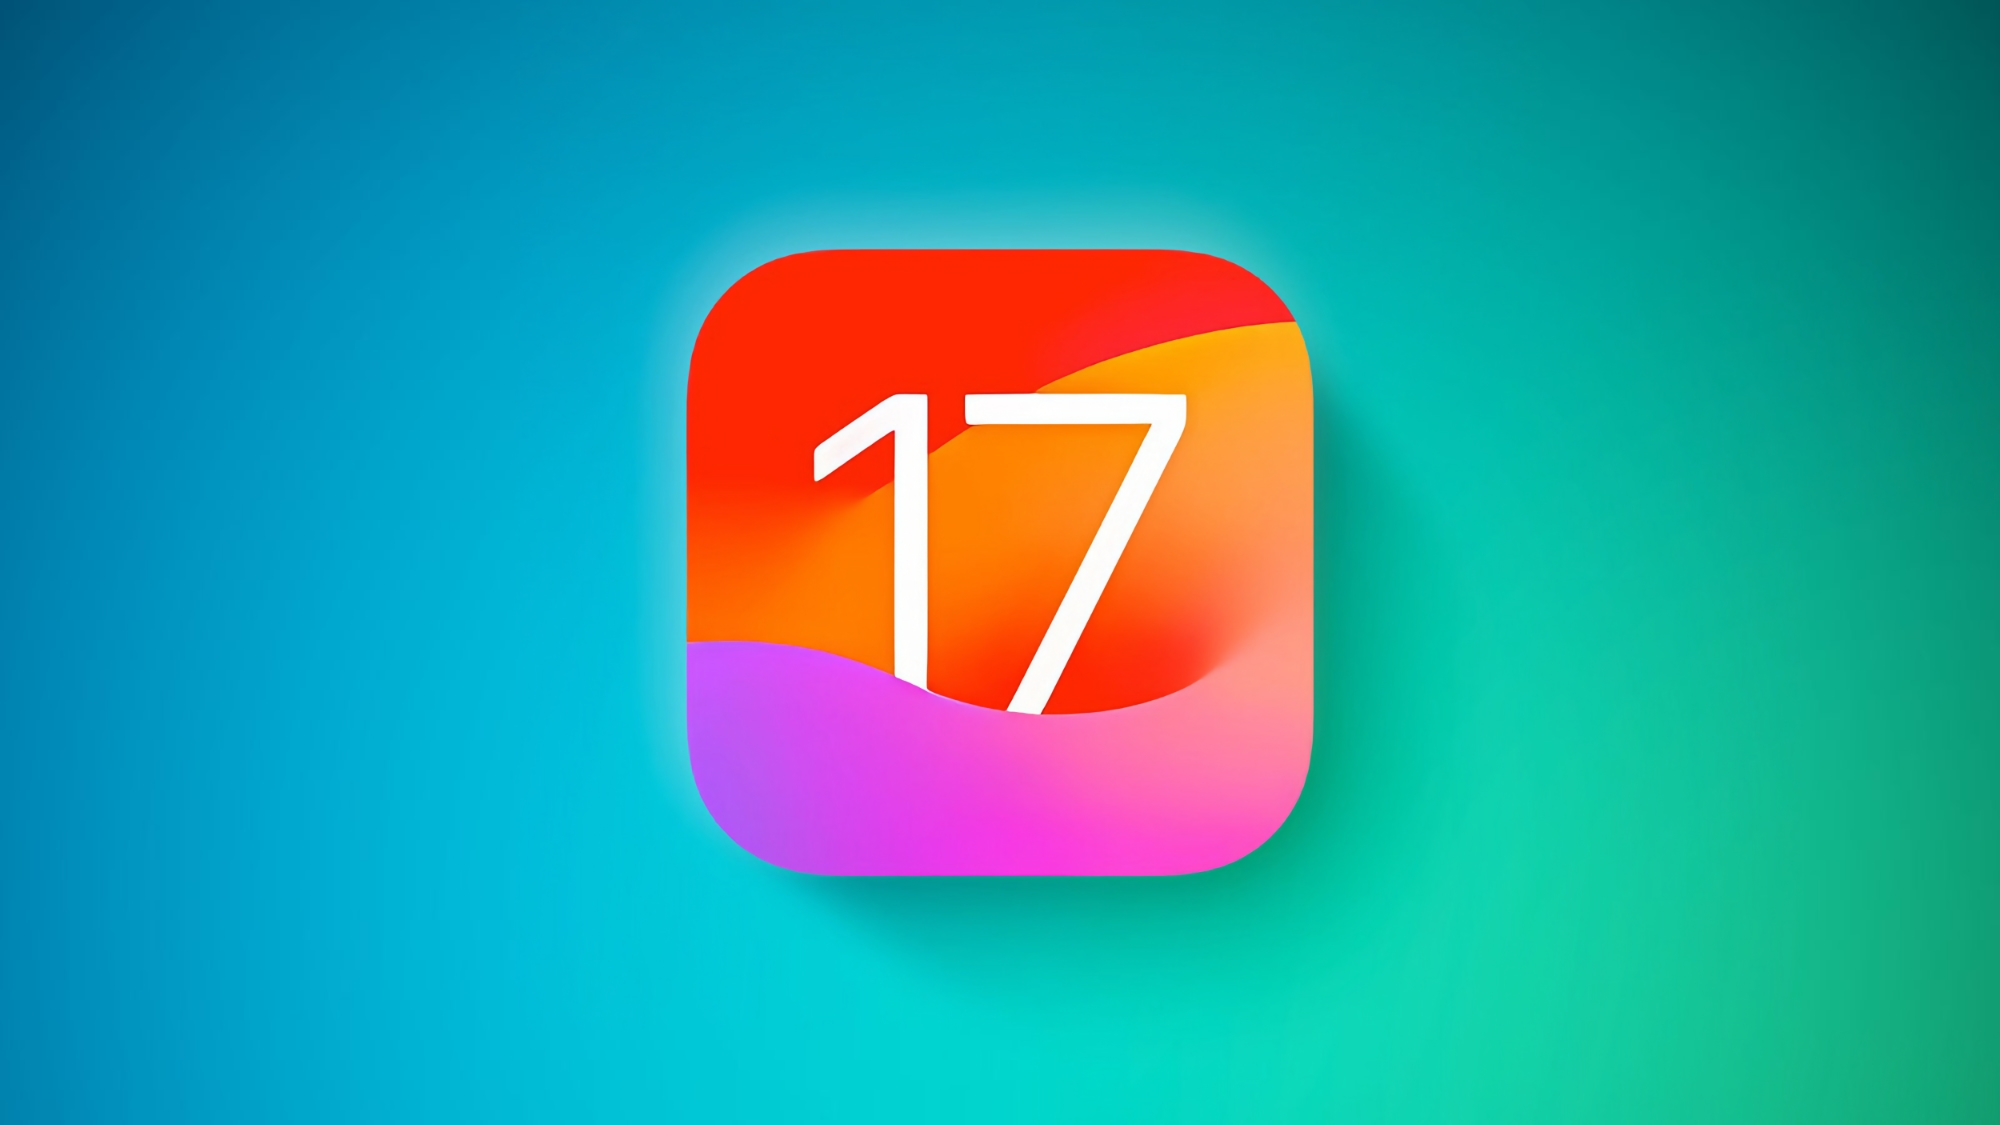 Apple udostępnia iOS 17 Beta 3: Co nowego i kiedy można spodziewać się oprogramowania układowego?